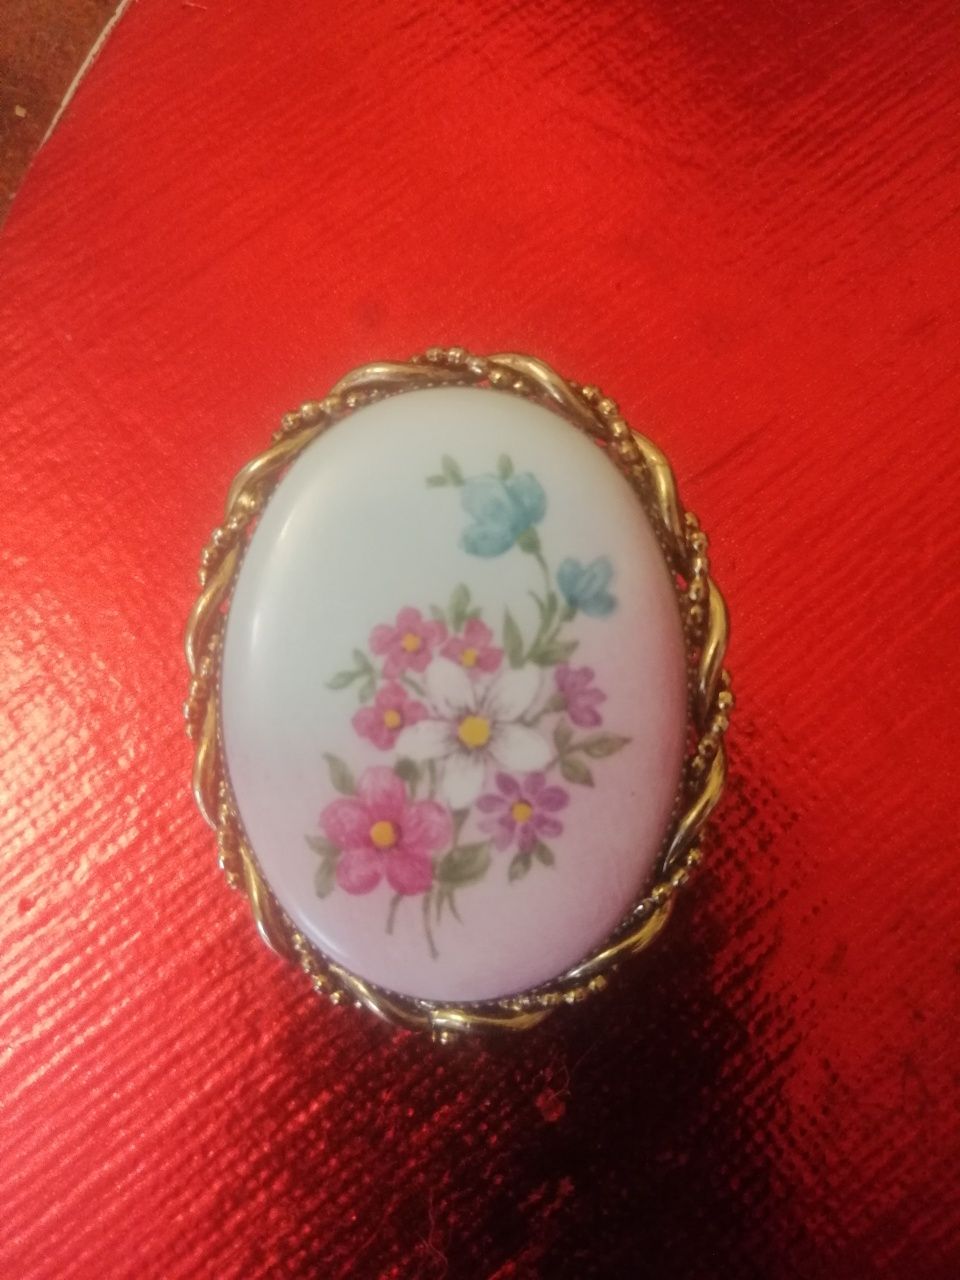 Broszka medalion porcelana 2 w 1 vintage hand made